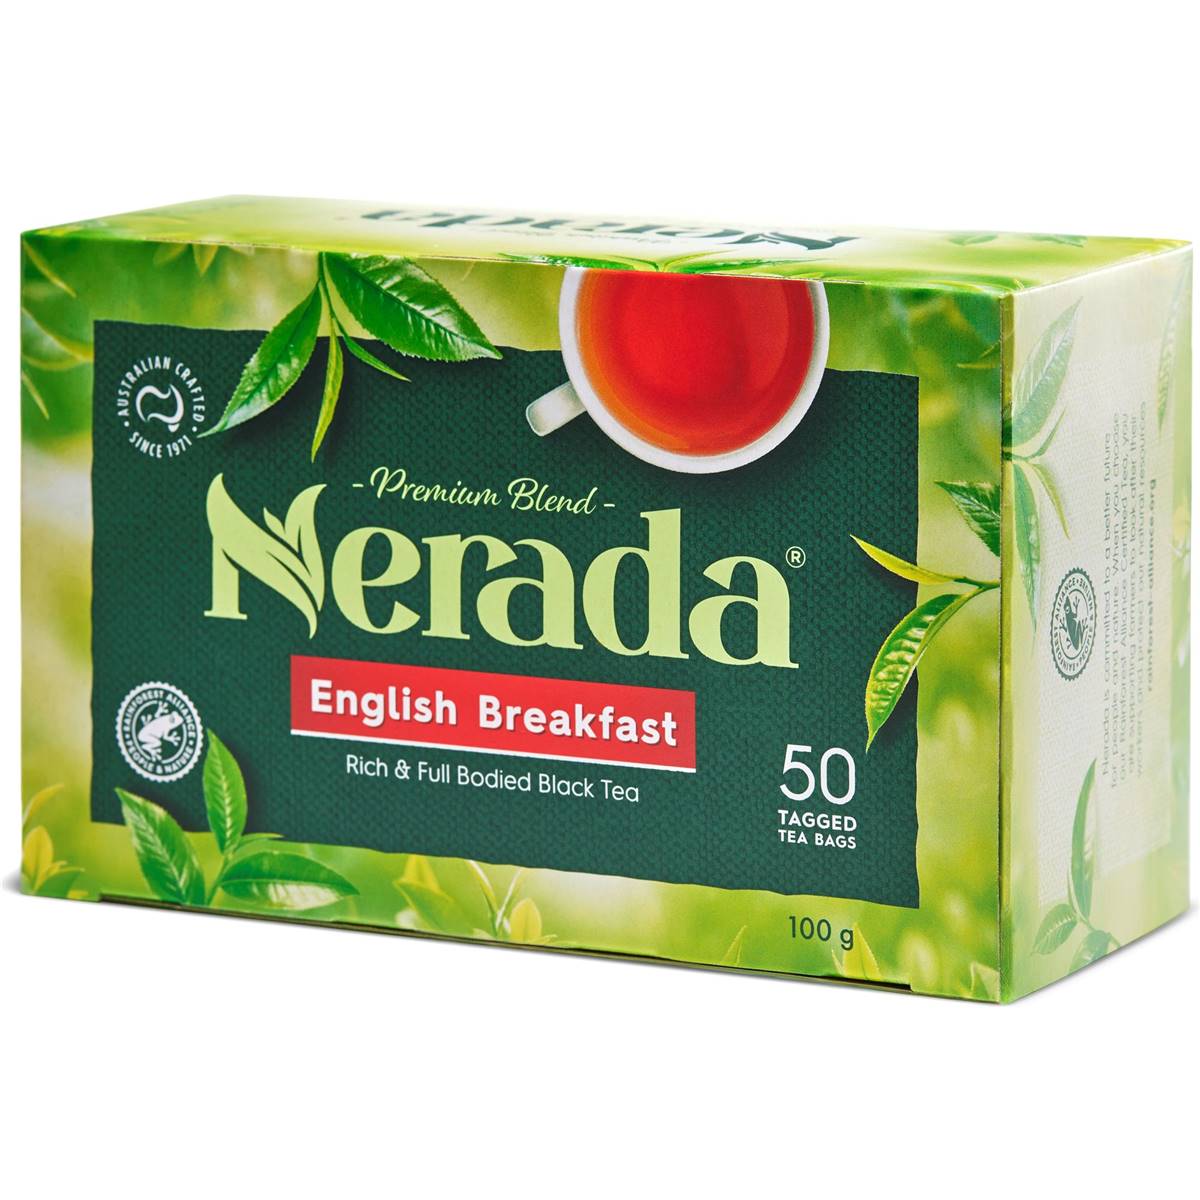 Calories in Nerada Tea Bags